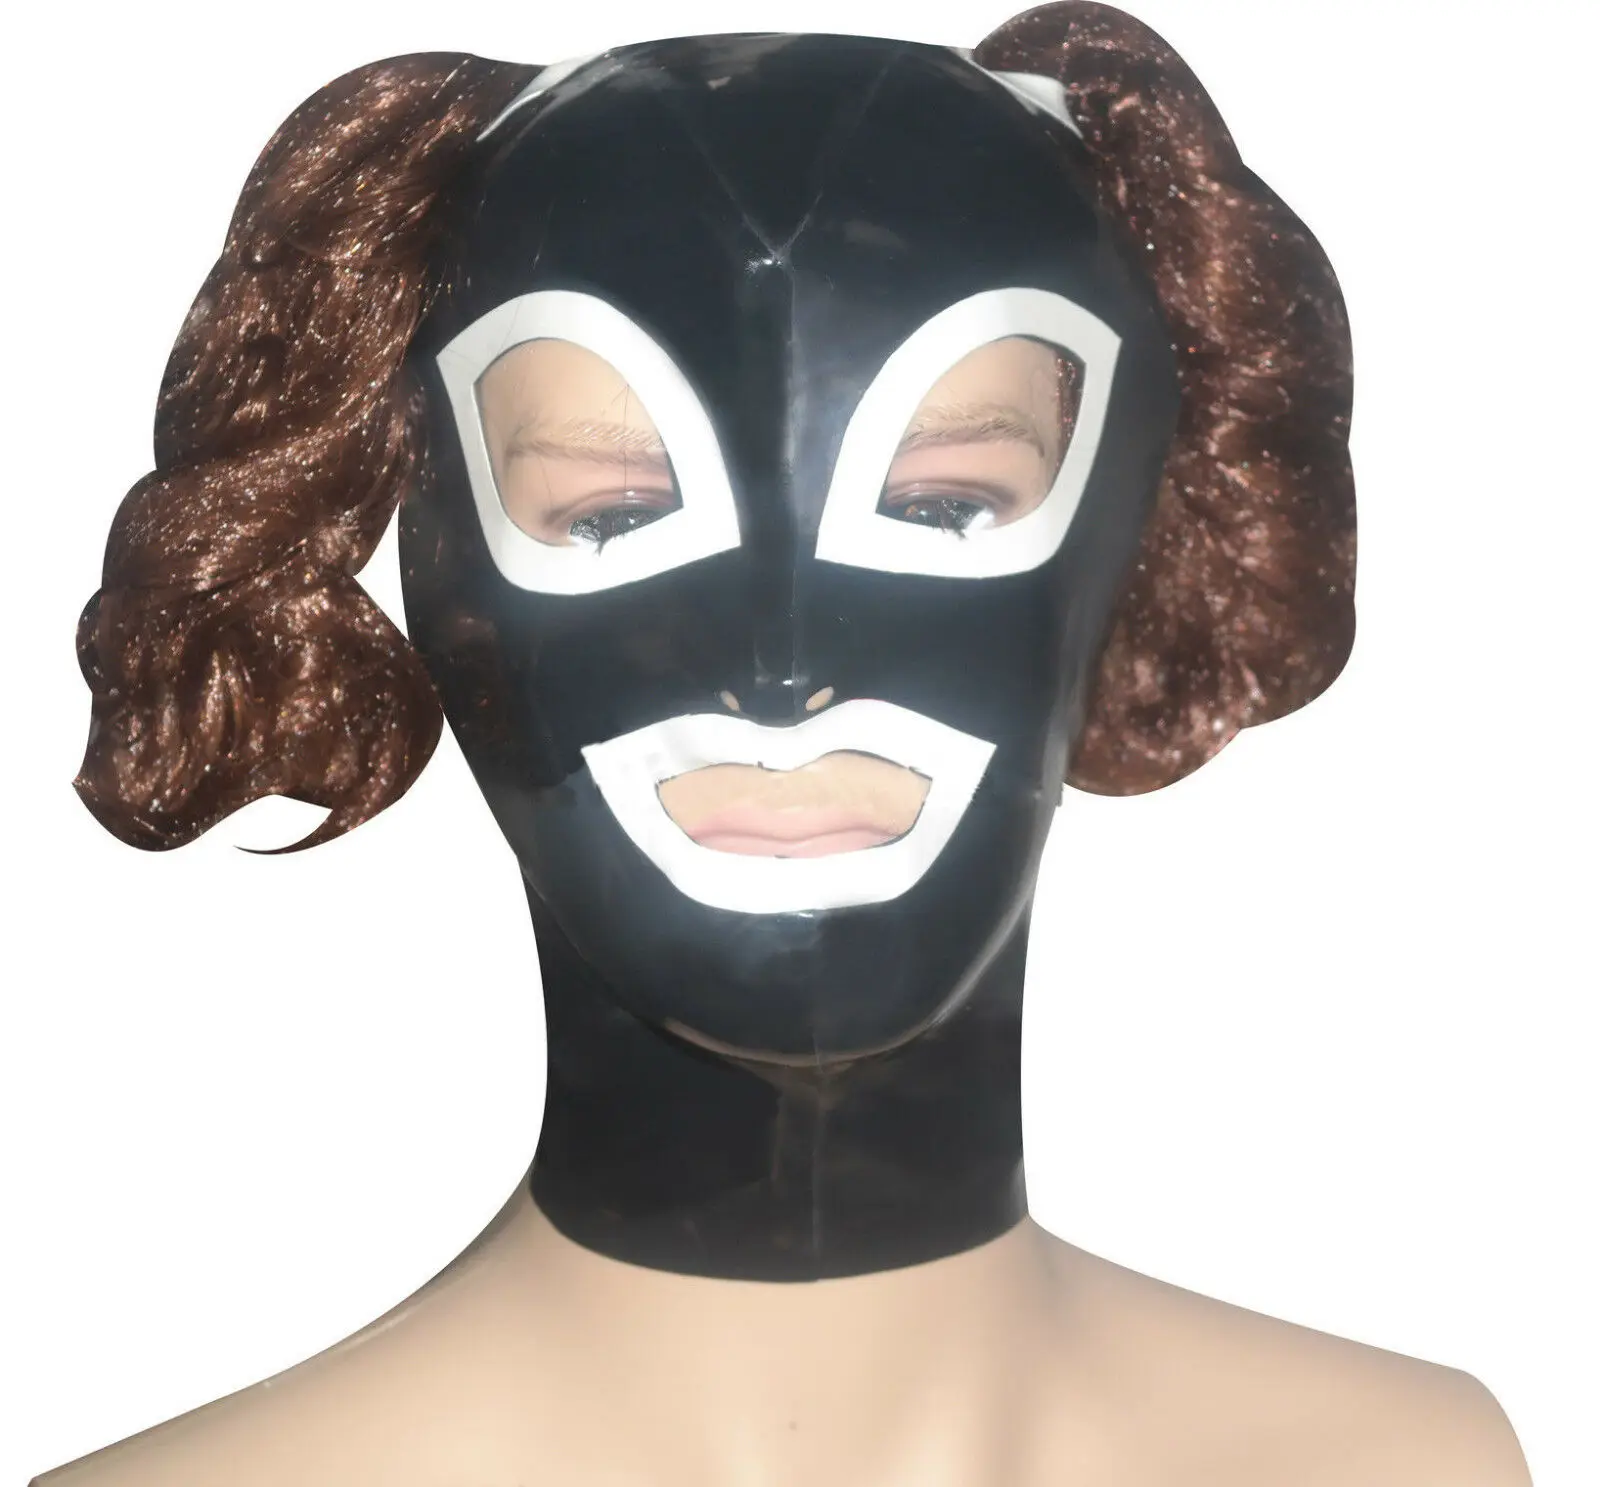 Купи Латексная резиновая маска-капюшон Gummi 0, 4 мм костюм-кошка унисекс Одежда для вечеринок маска БДСМ секс Фетиш мужские Фетиш Секс-игры БДСМ за 1,680 рублей в магазине AliExpress